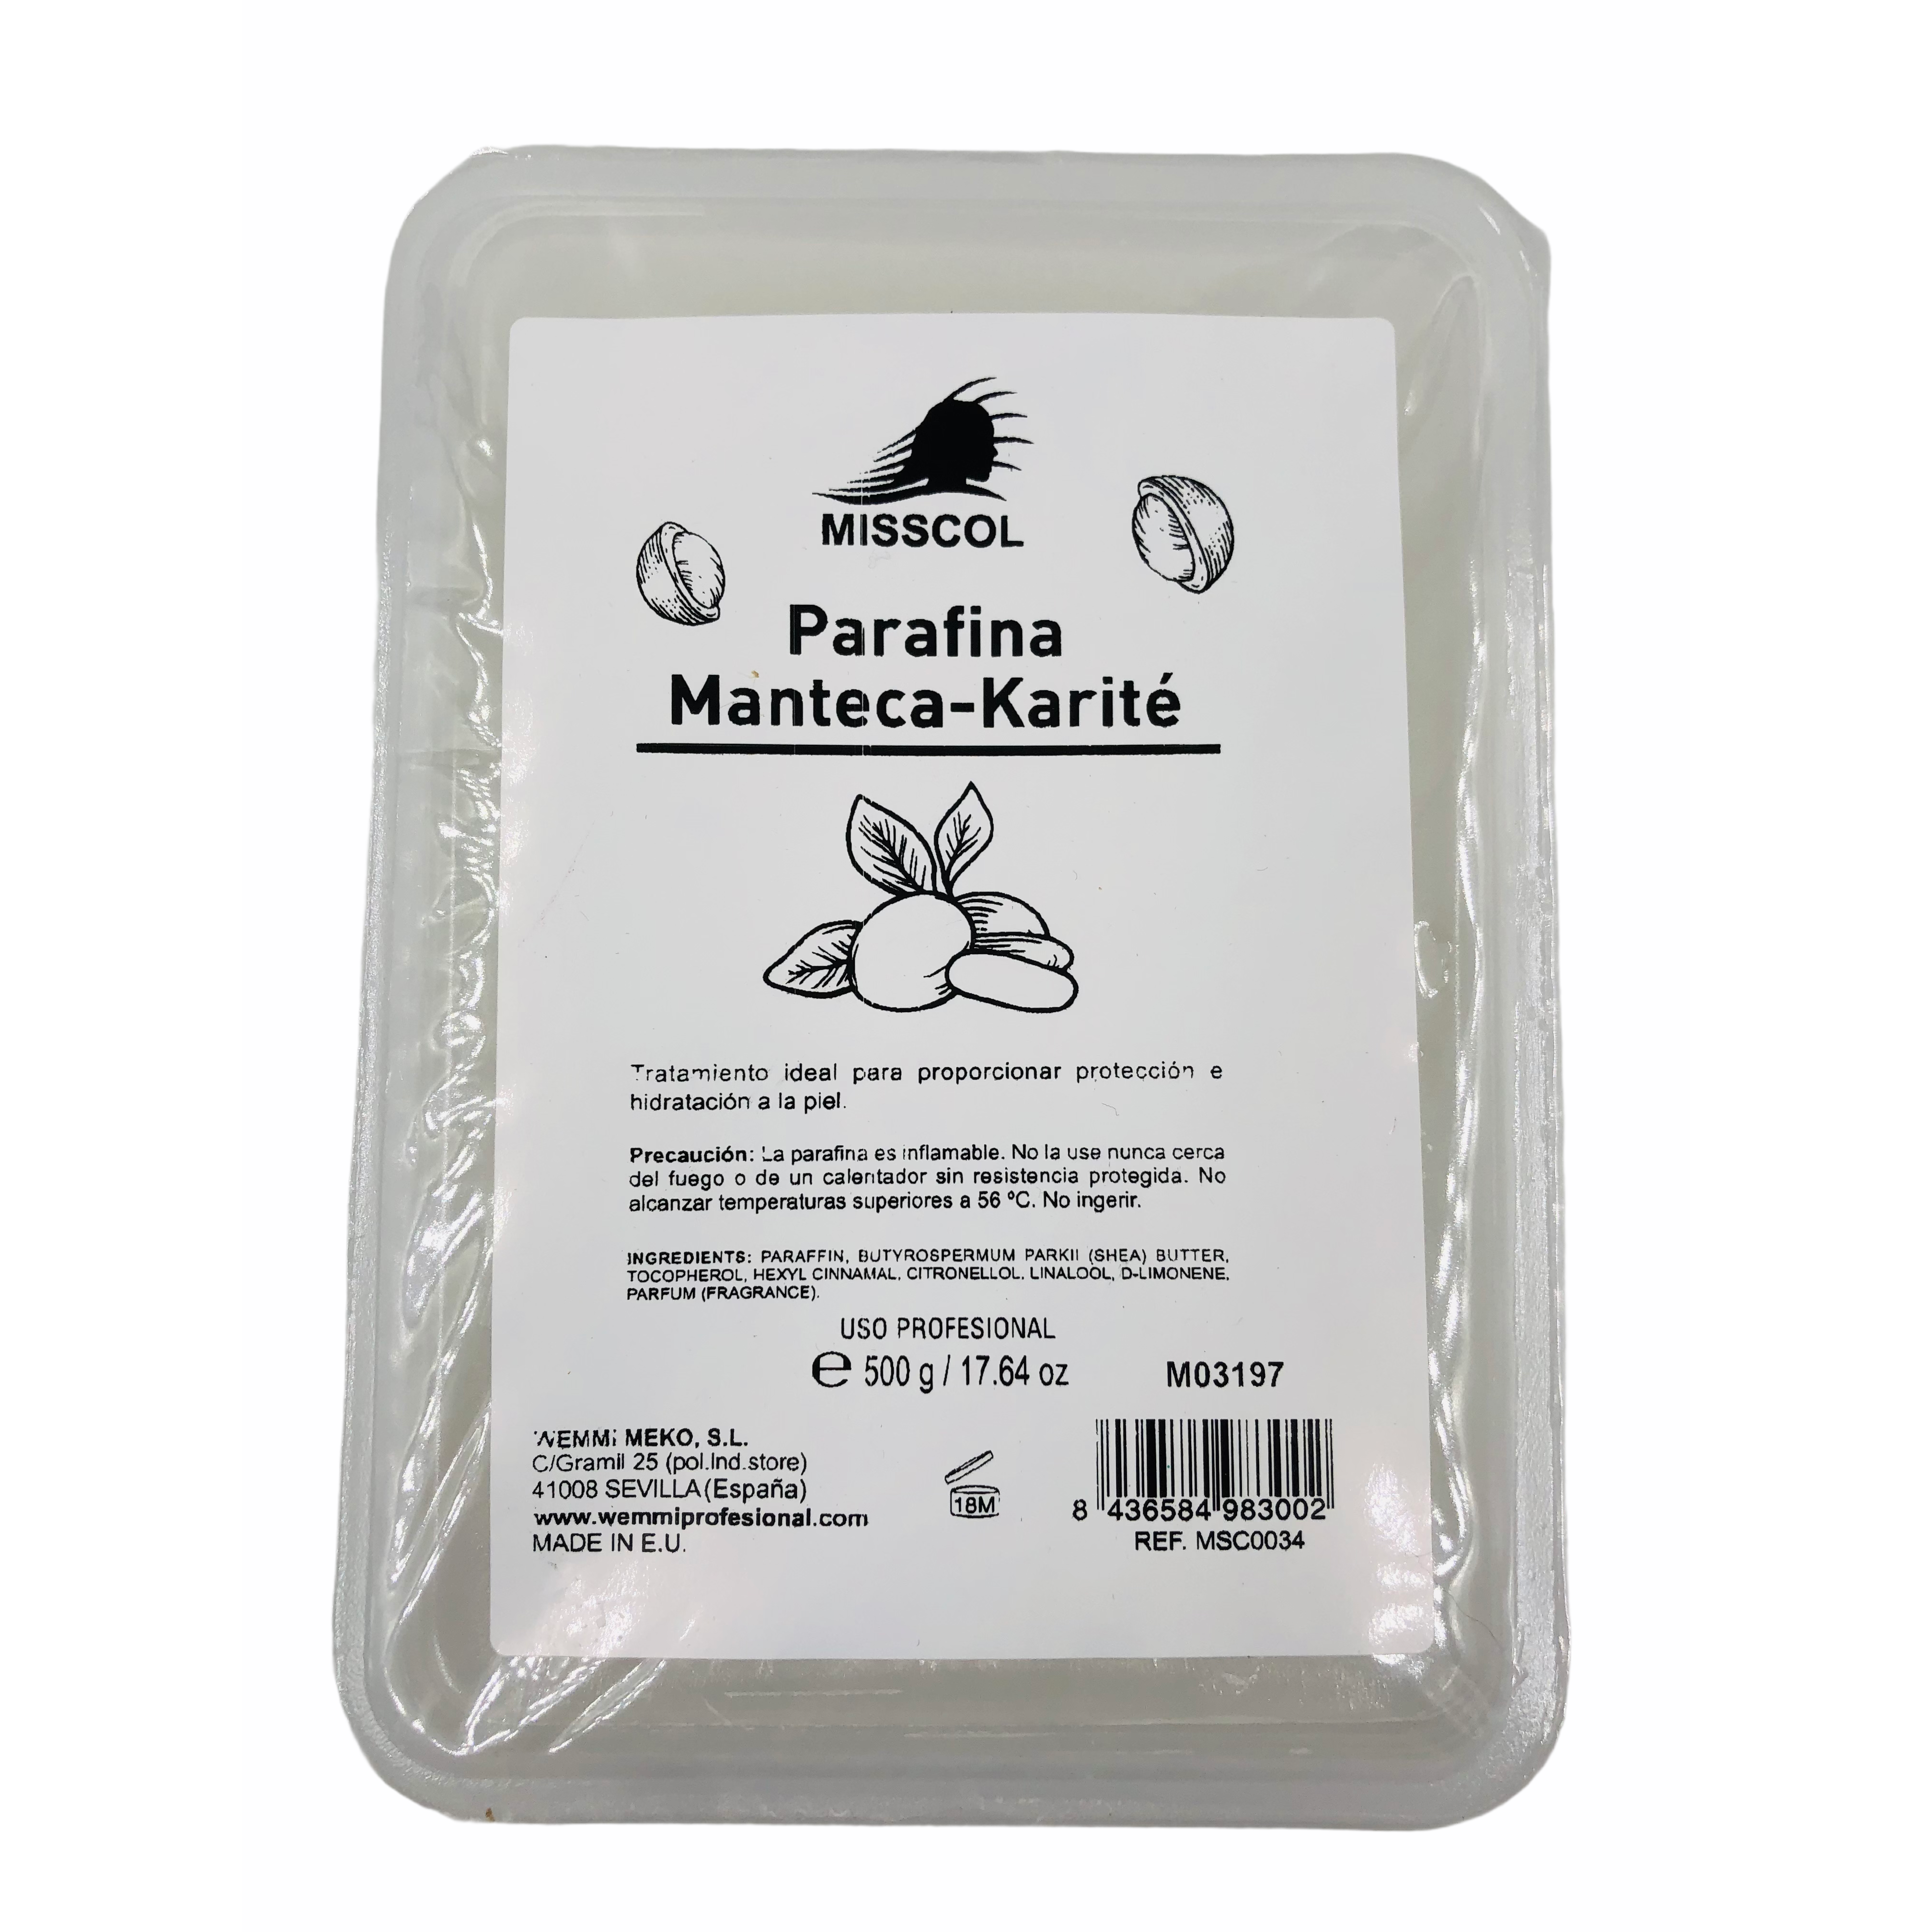 Parafina manteca-karité 500g